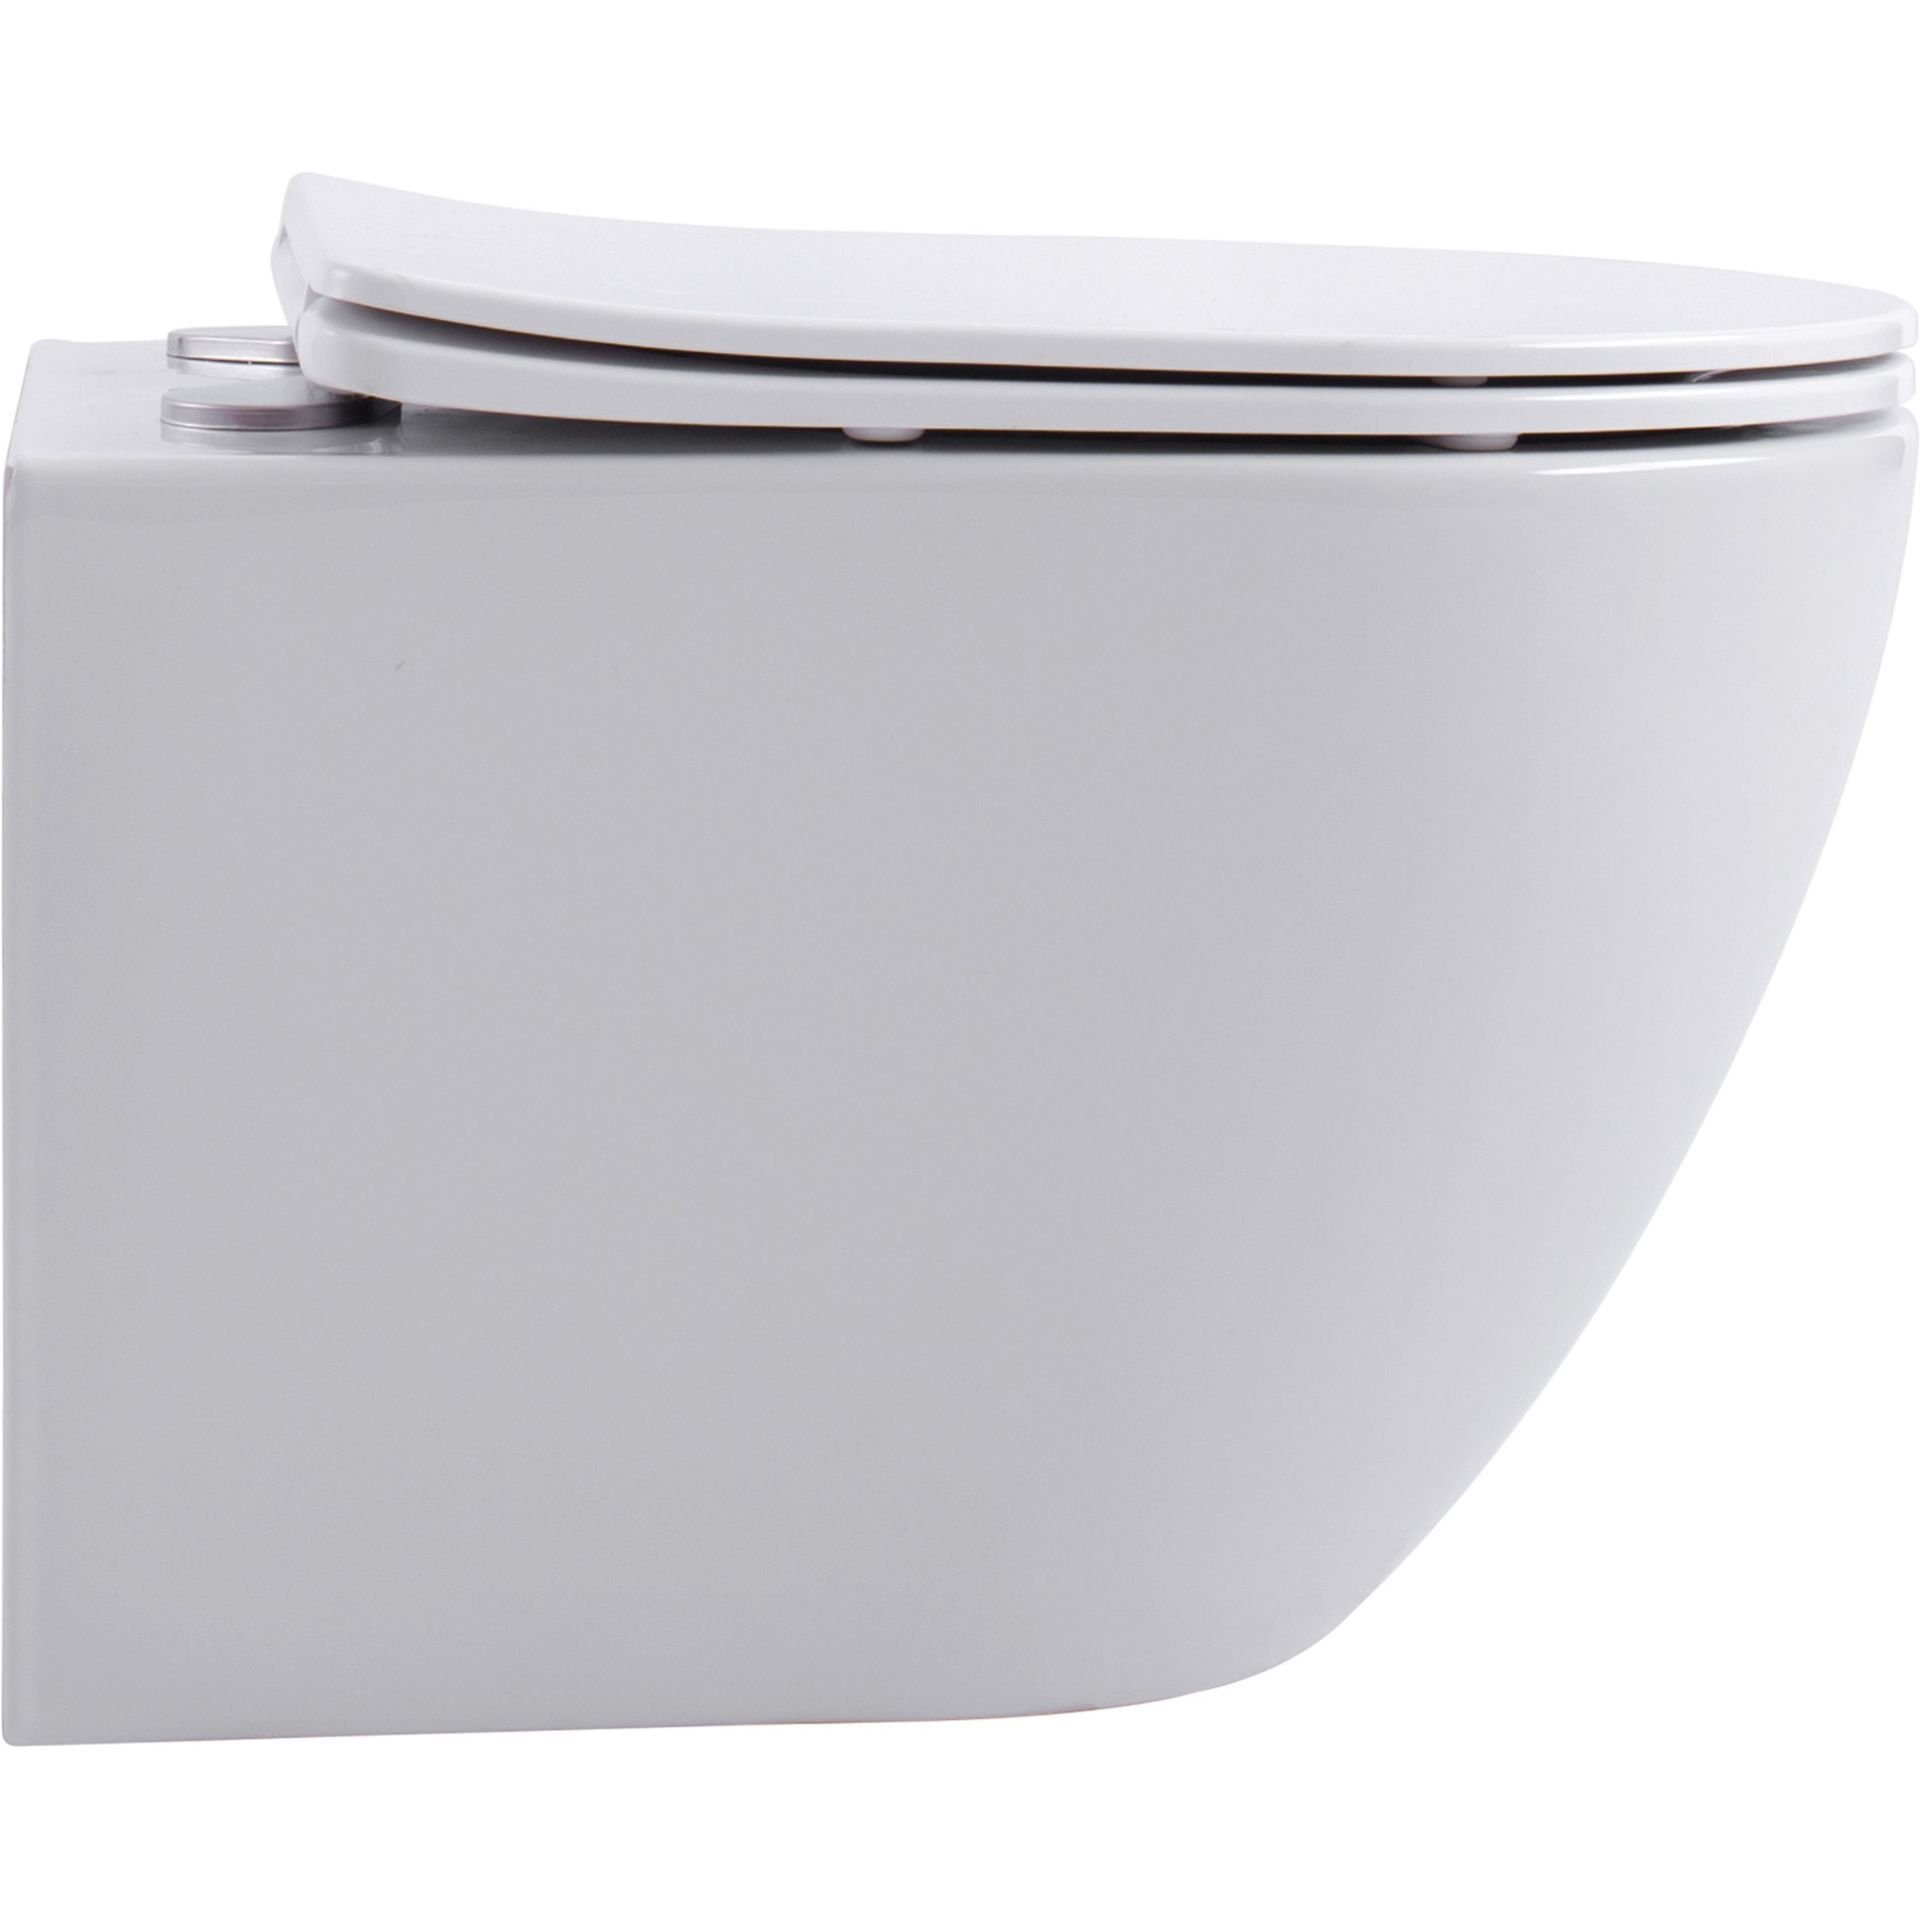 NEW & BOXED KARCENT Rimless Washdown Wall Hung Toilet. MATT WHITE. This Rimless Matt White wall-hung - Image 2 of 2